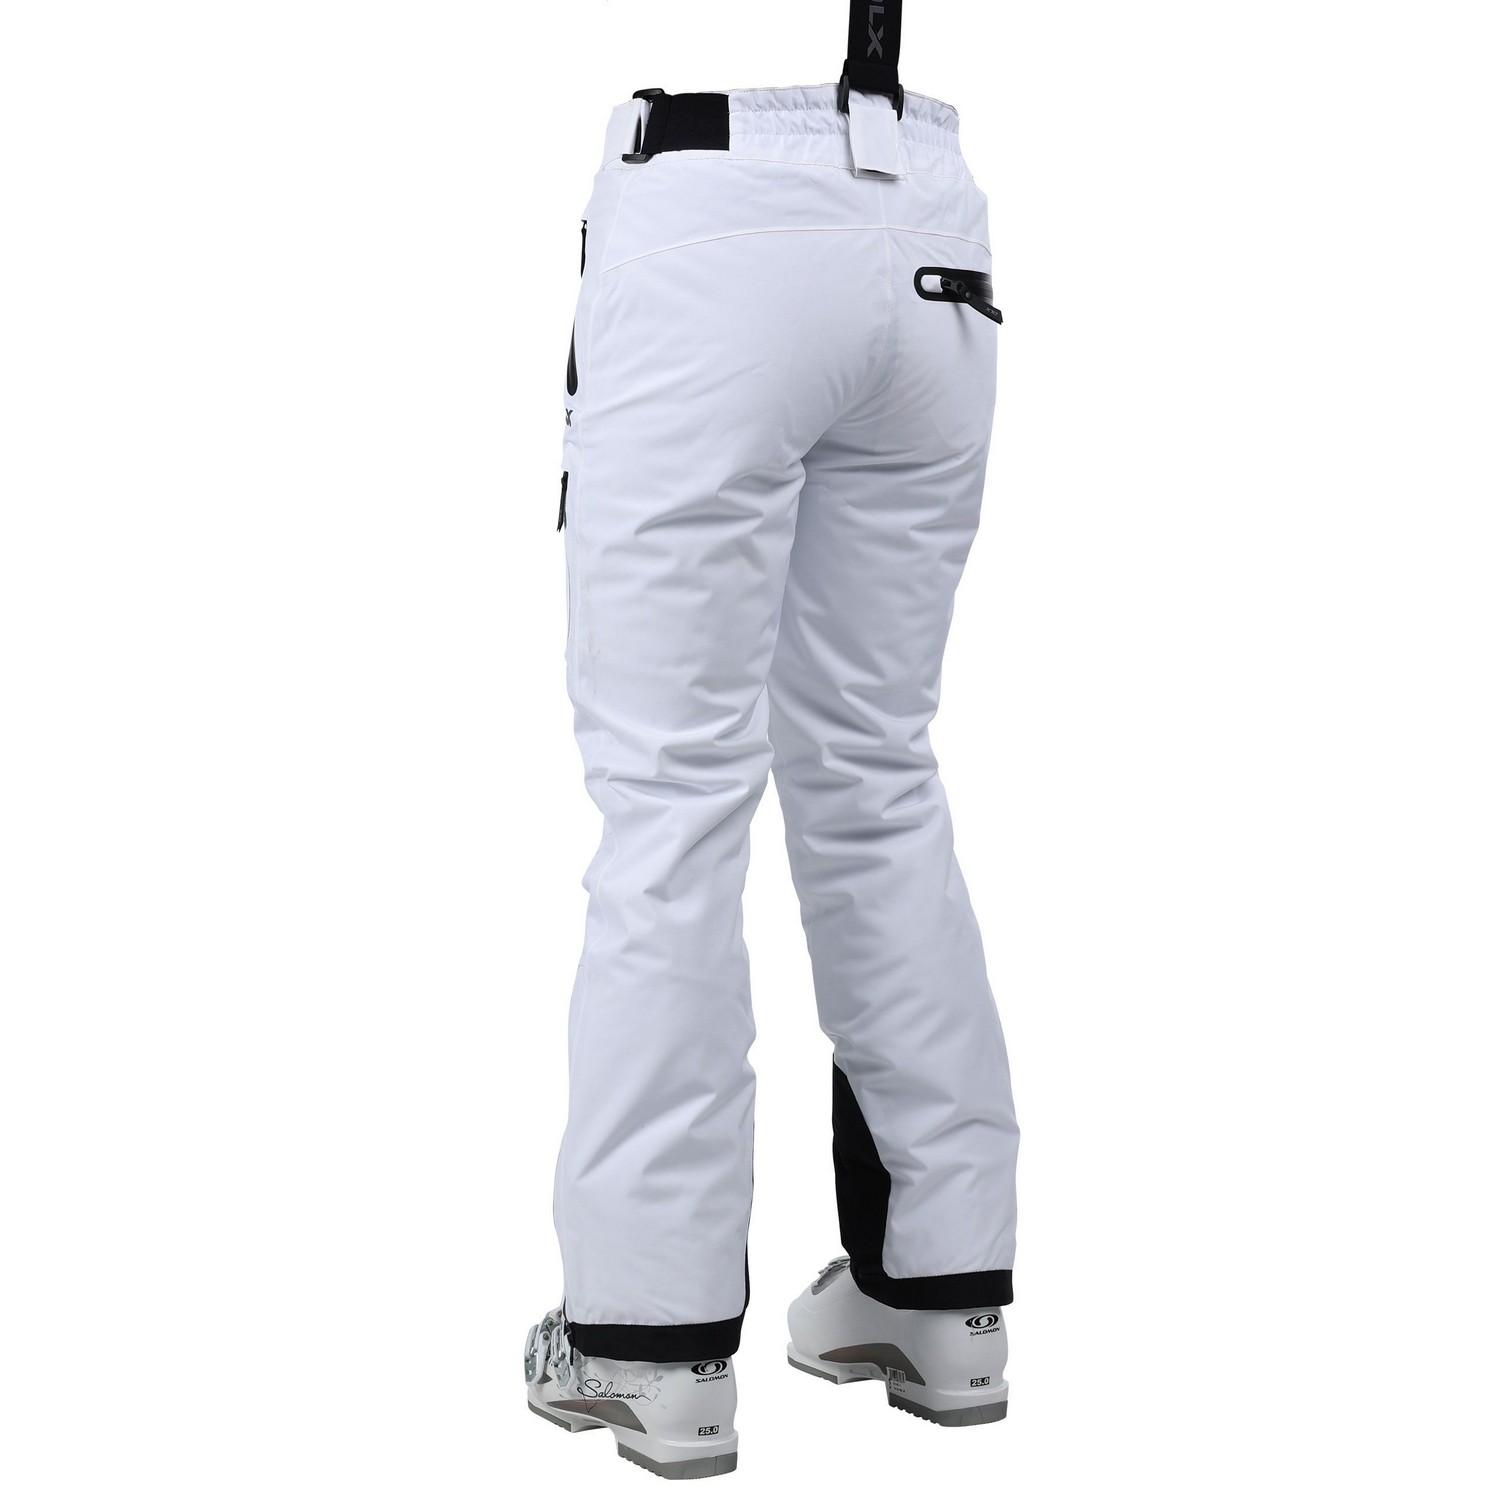 Pantalones De Esquí De Dlx Impermeable Trespass Marisol Ii  MKP